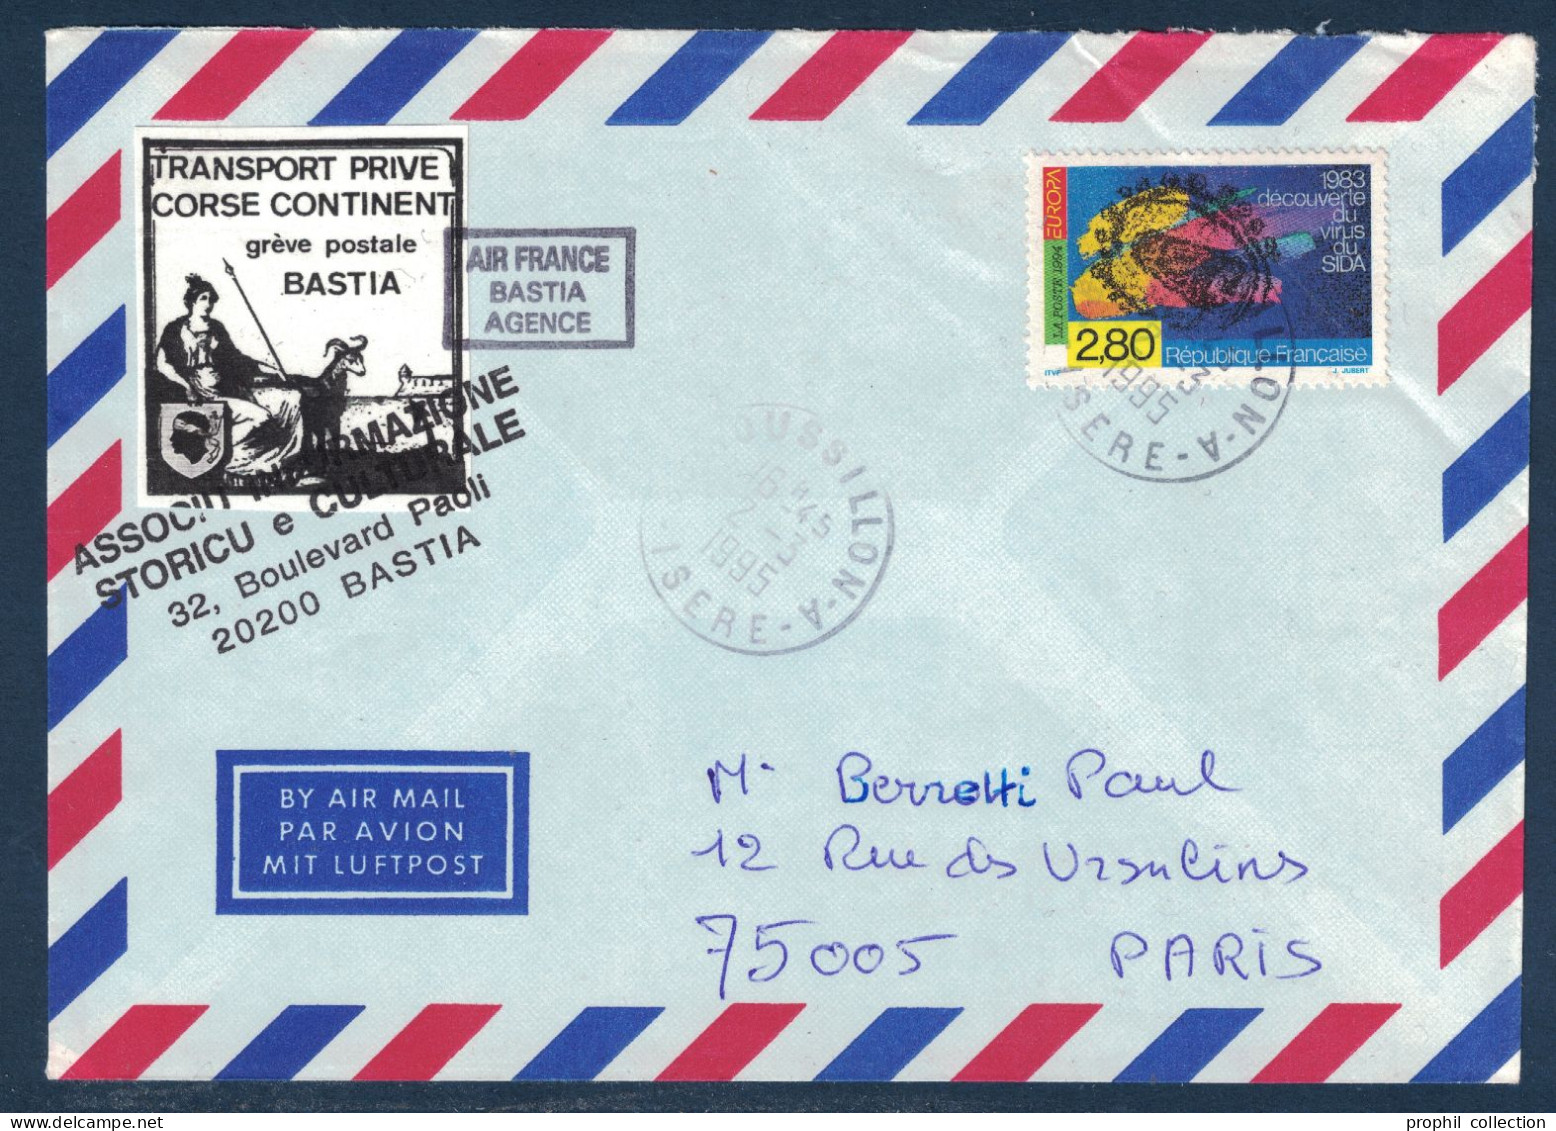 LETTRE GREVE POSTALE BASTIA 1995 VIGNETTE TRANSPORT PRIVÉ CORSE CONTINENT + TIMBRE SIDA Pour PARIS AIR FRANCE AGENCE - Documenten